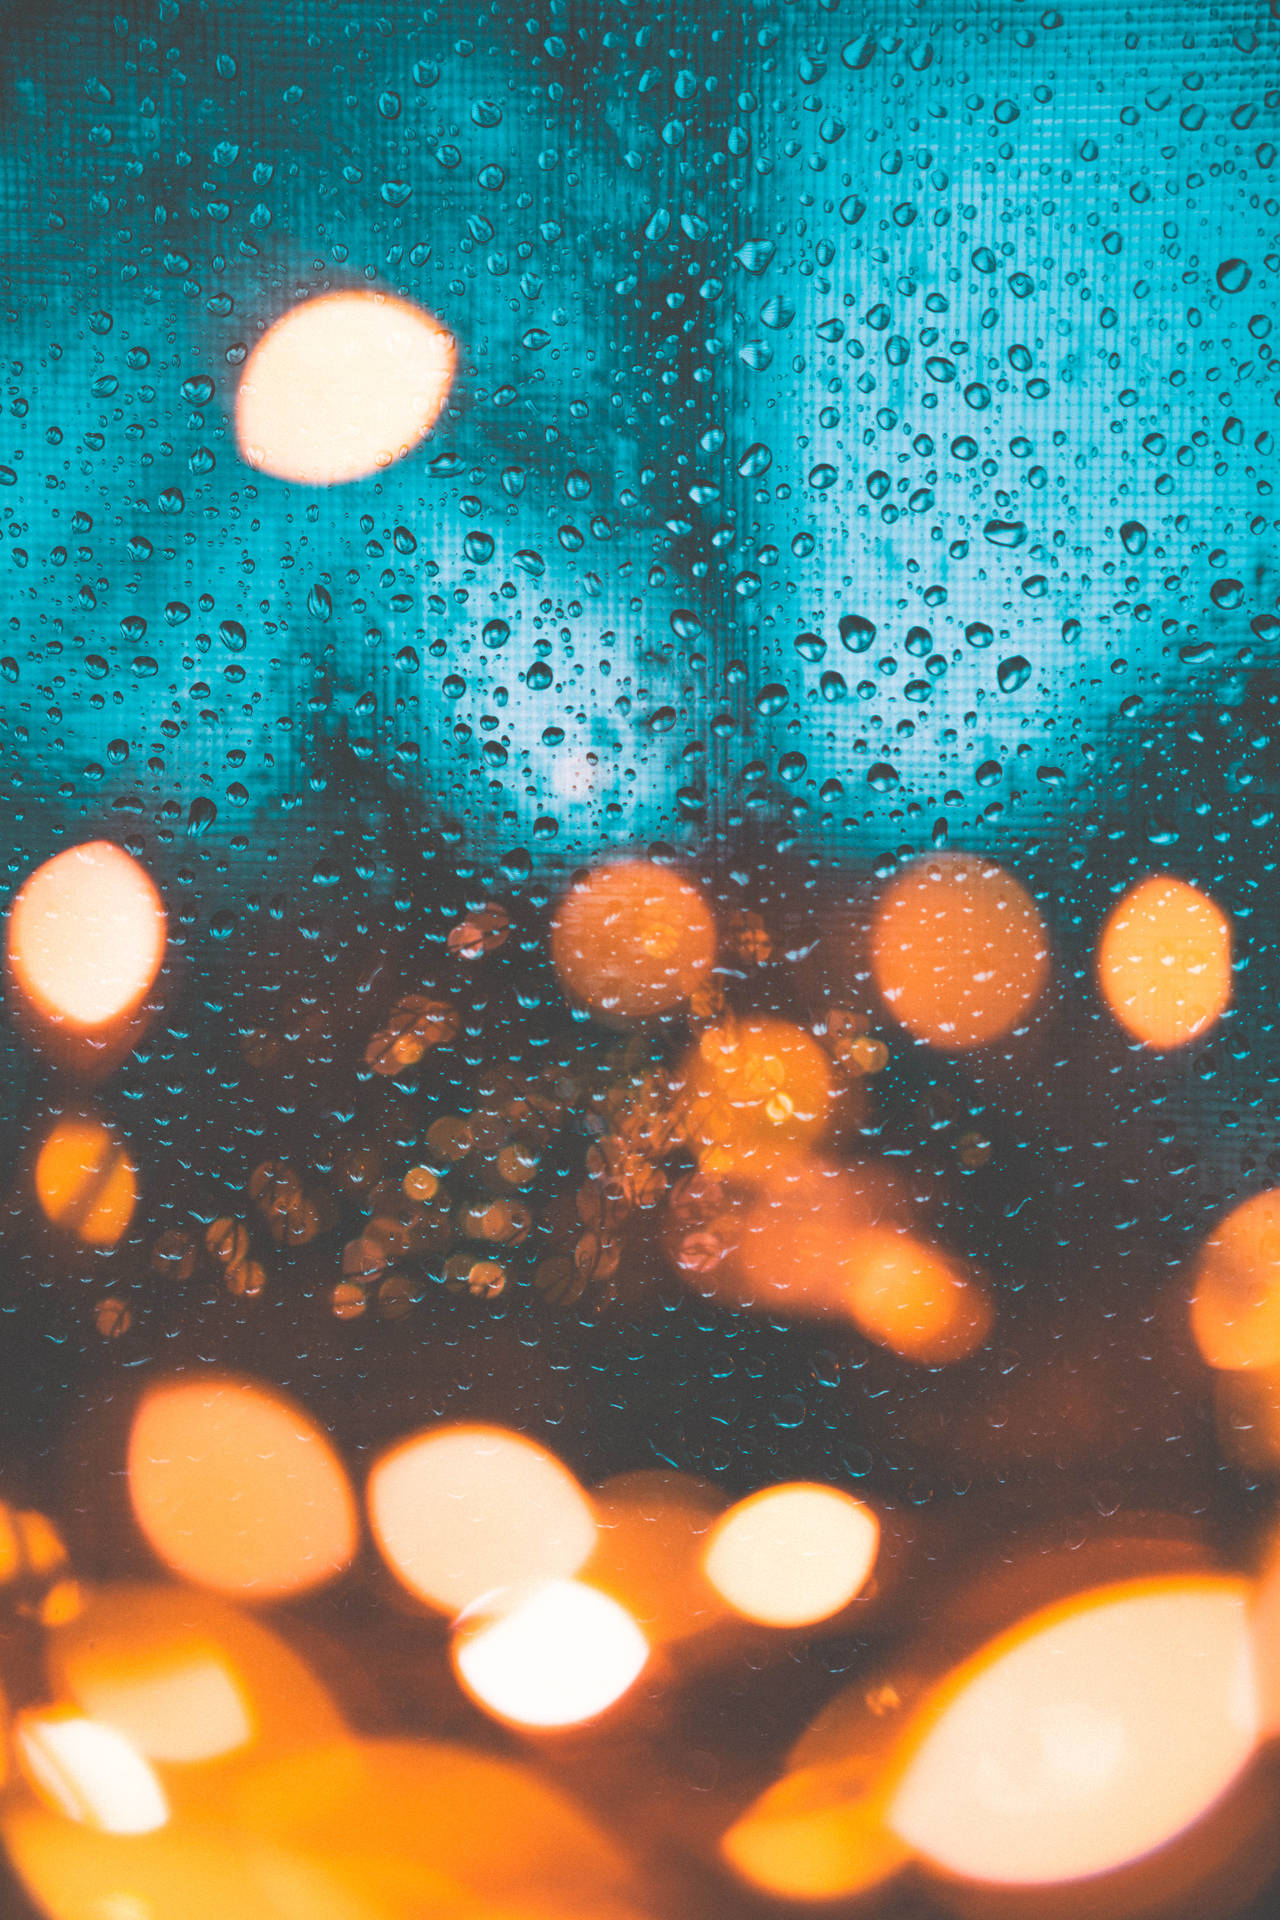 Window Water Droplets Wallpaper